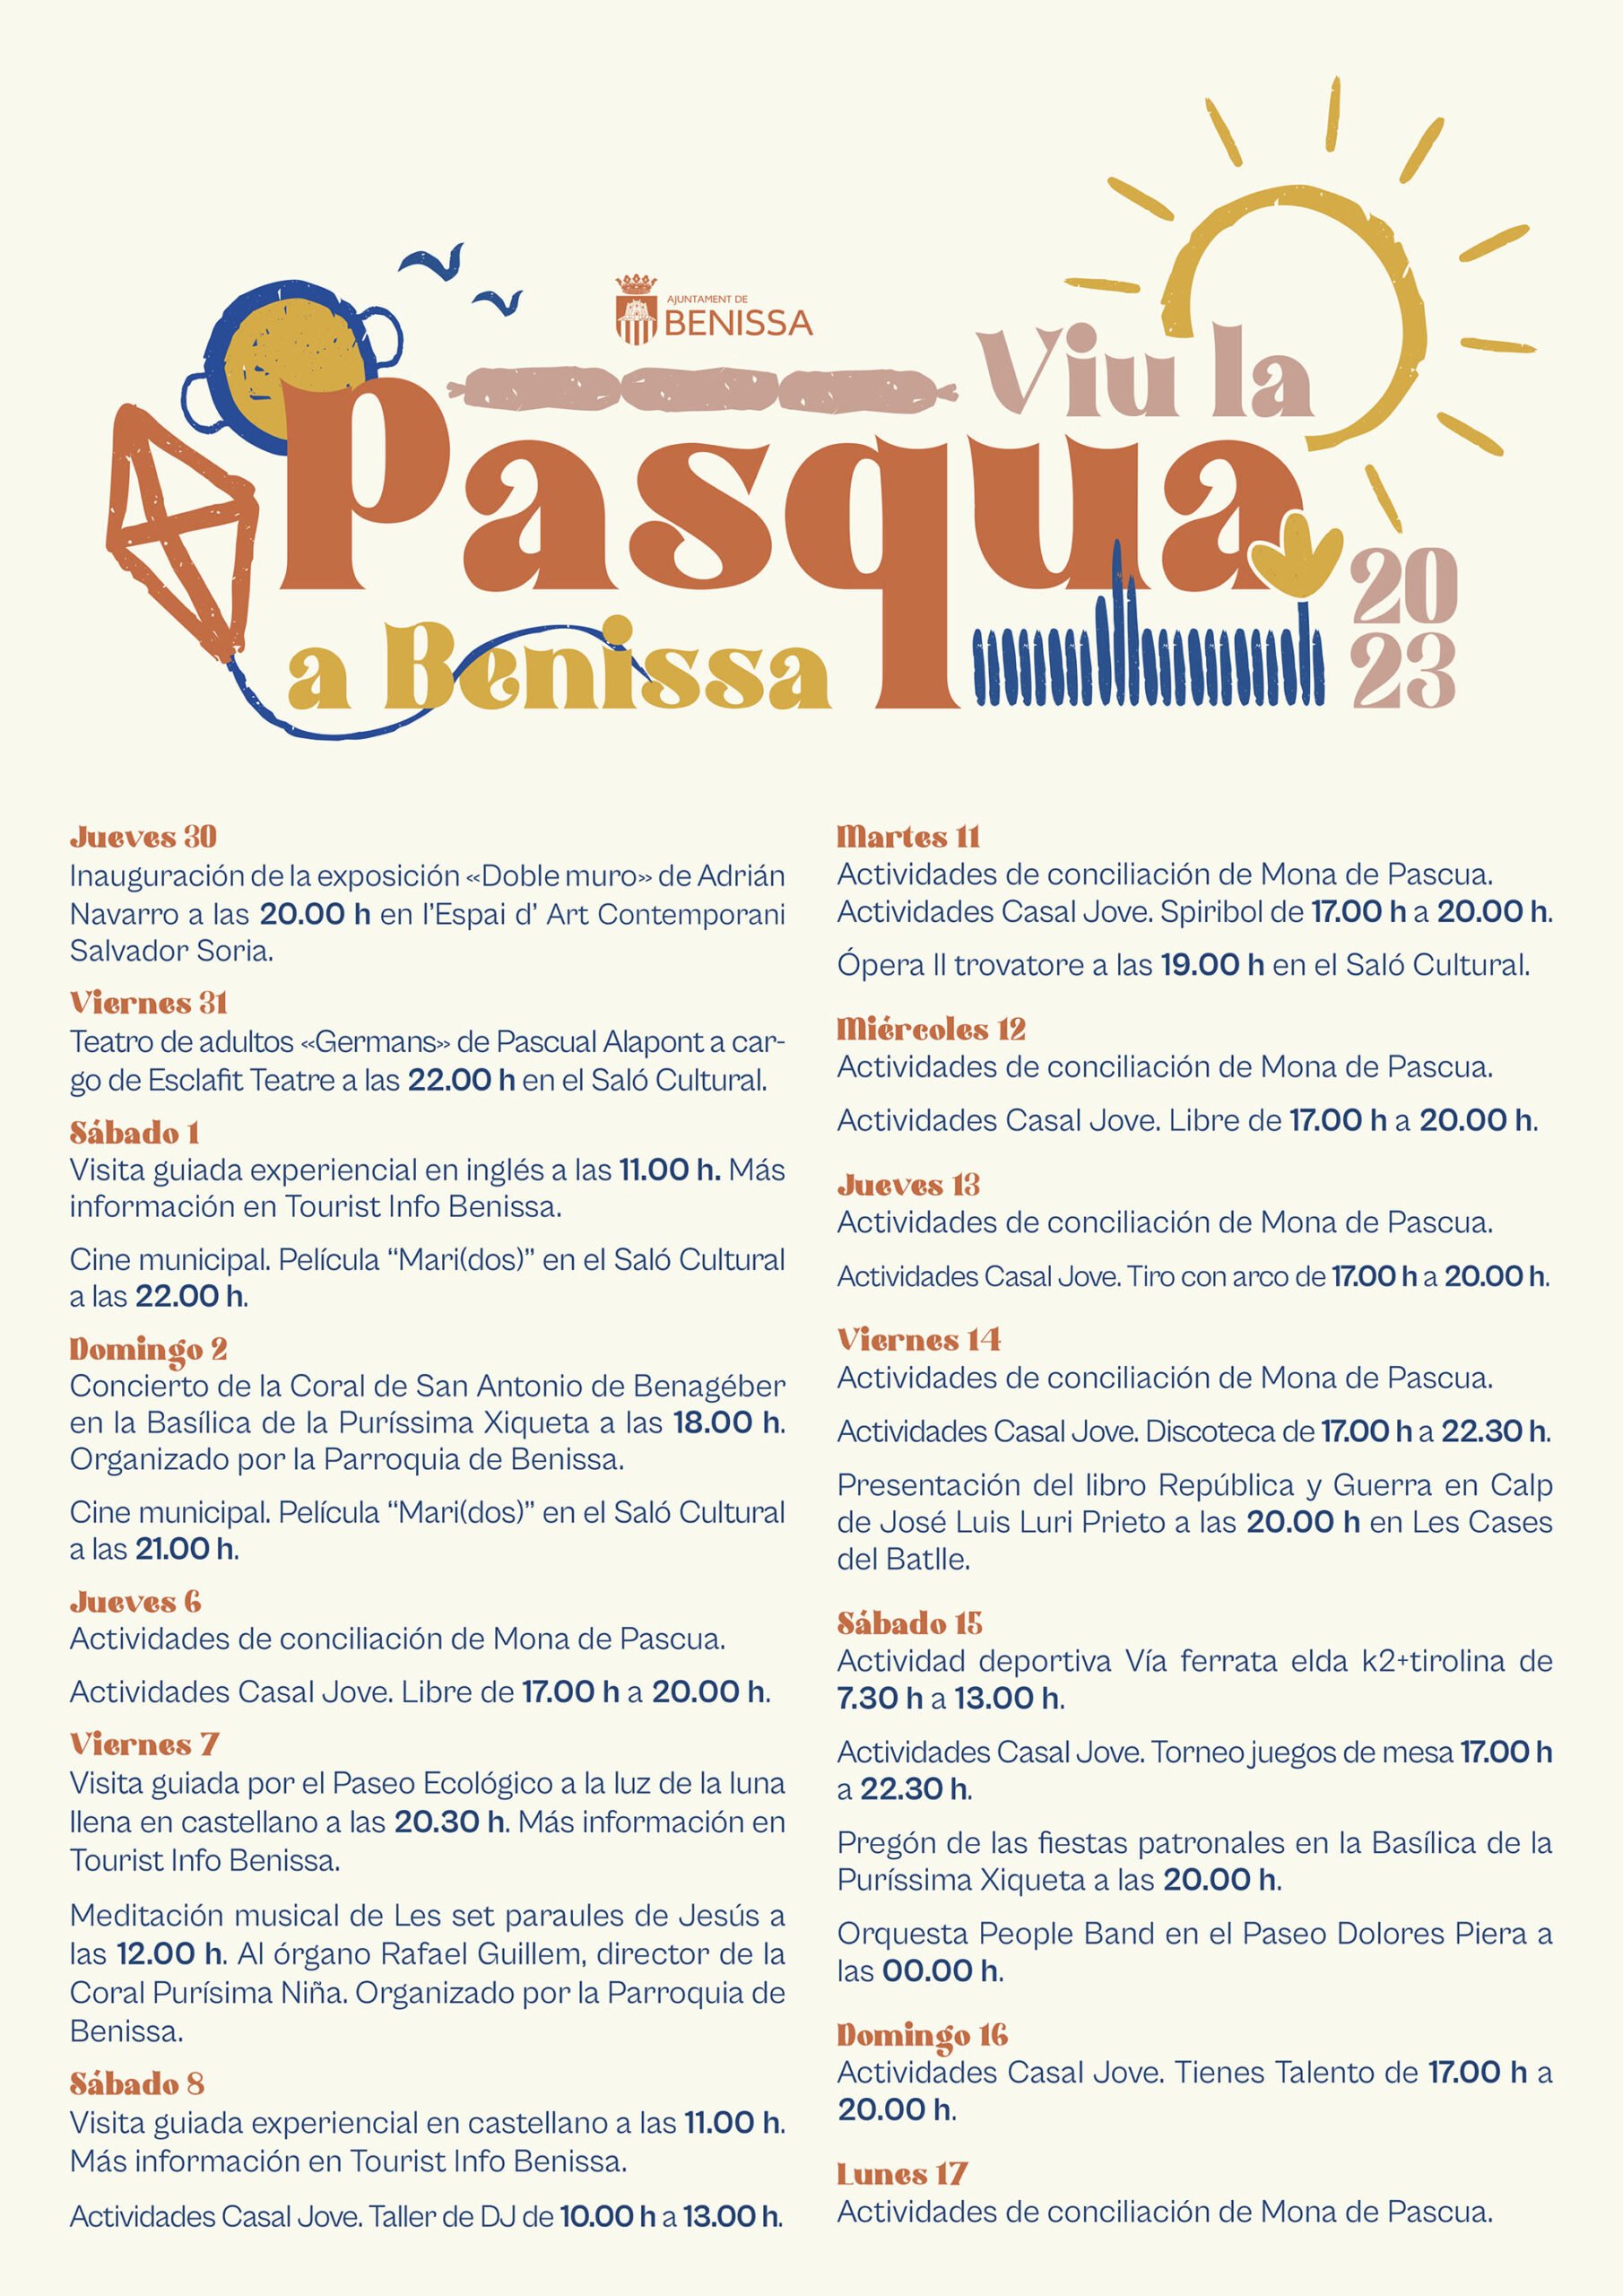 Programación de Viu la Pasqua 2023 en Benissa (castellano)